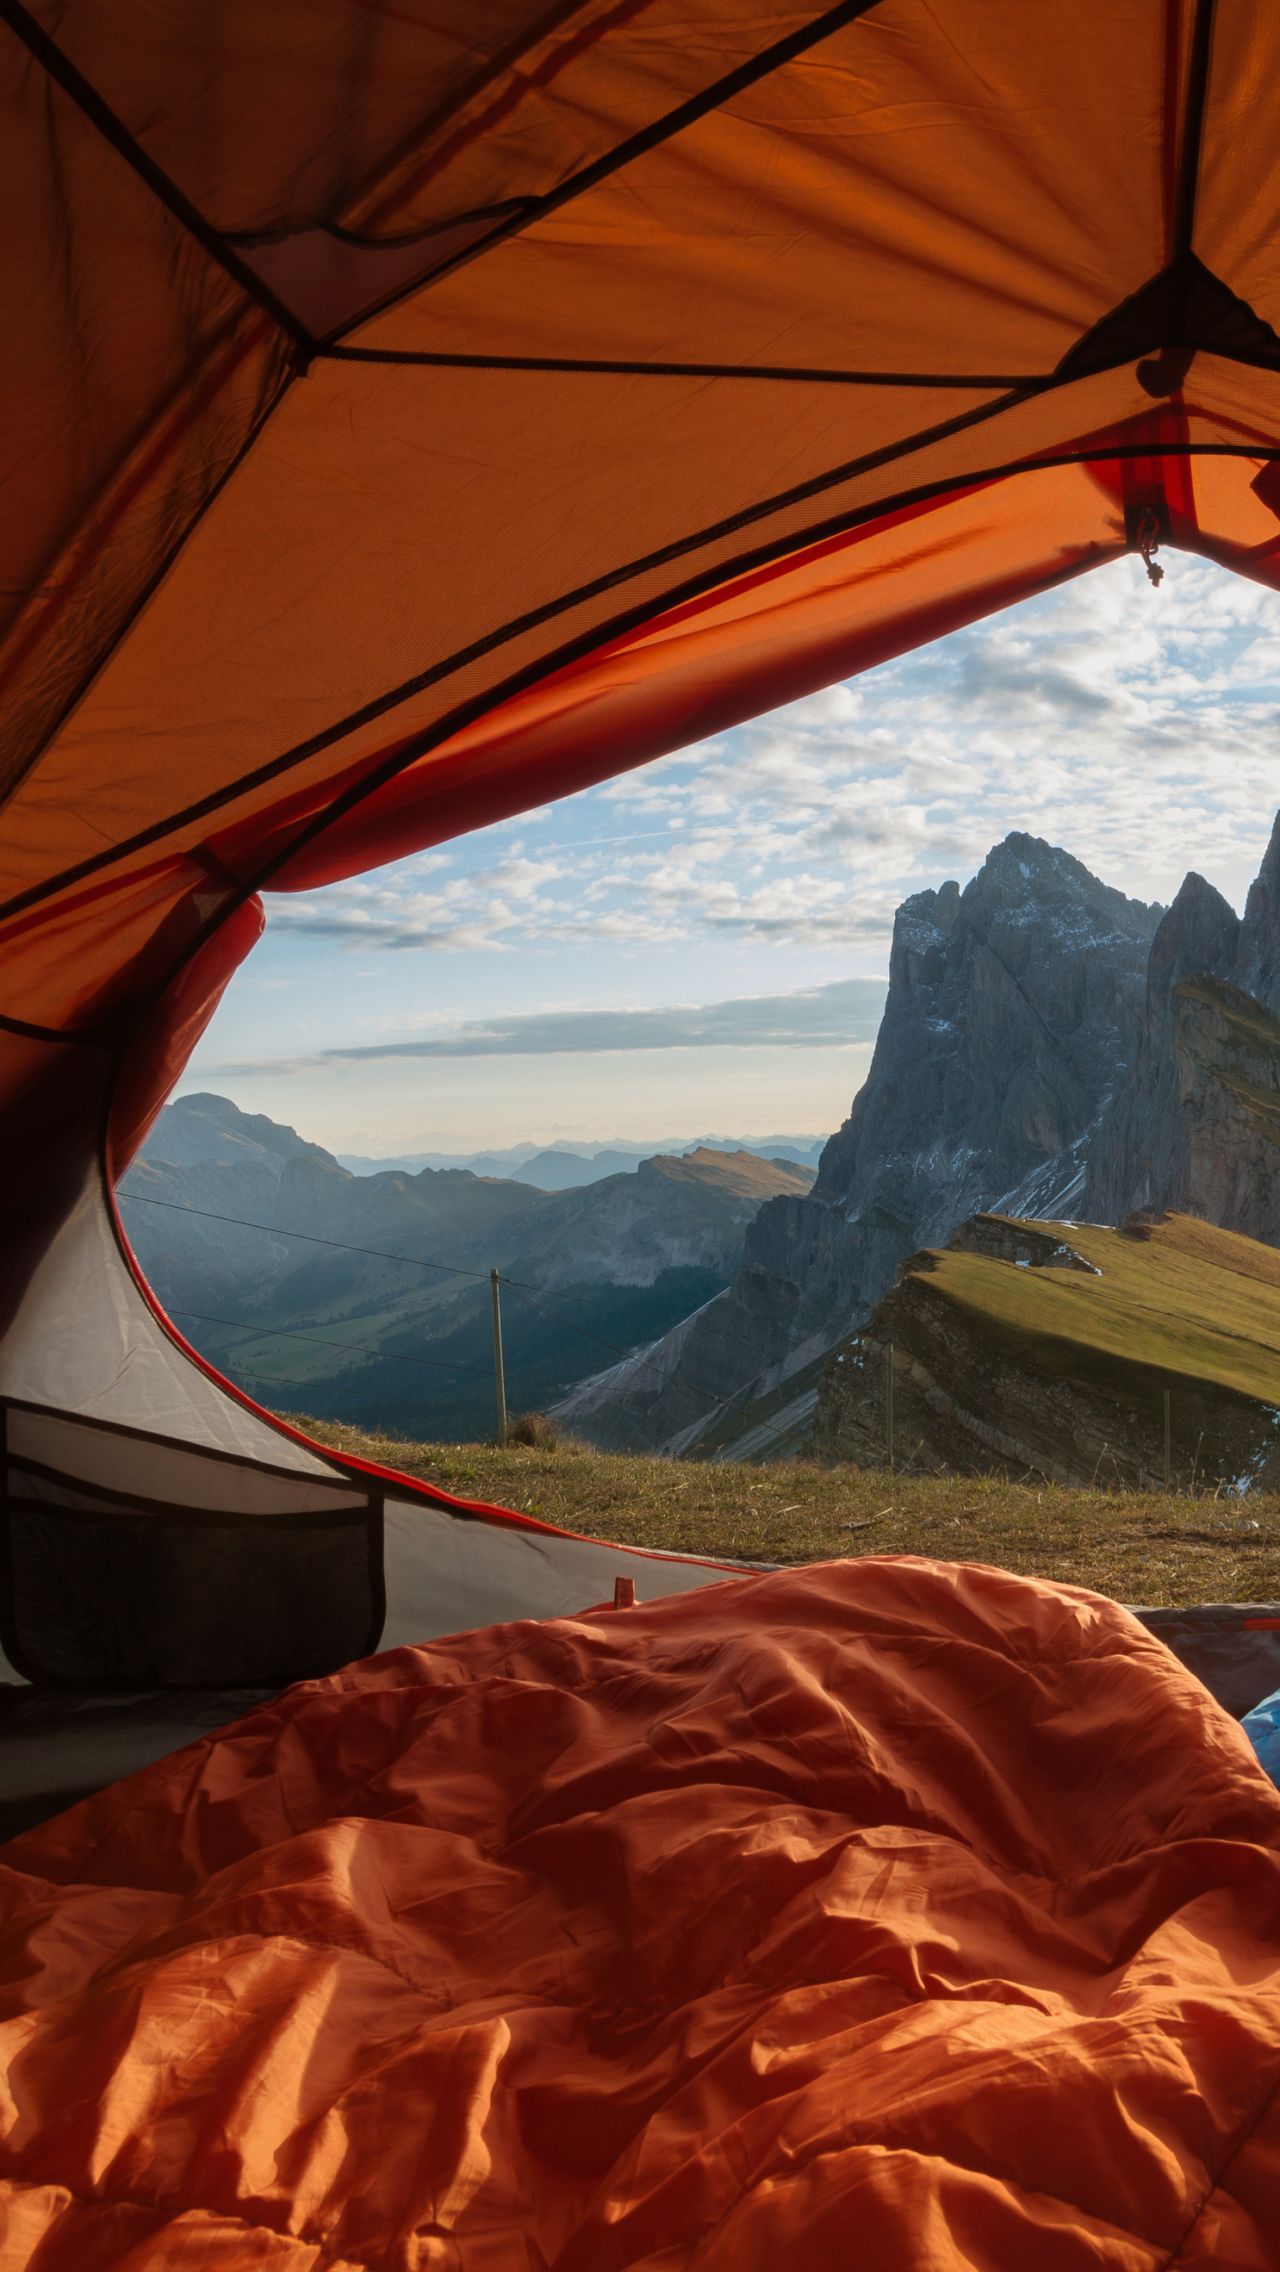 Смогли бы заночевать в палатке на такой высоте?